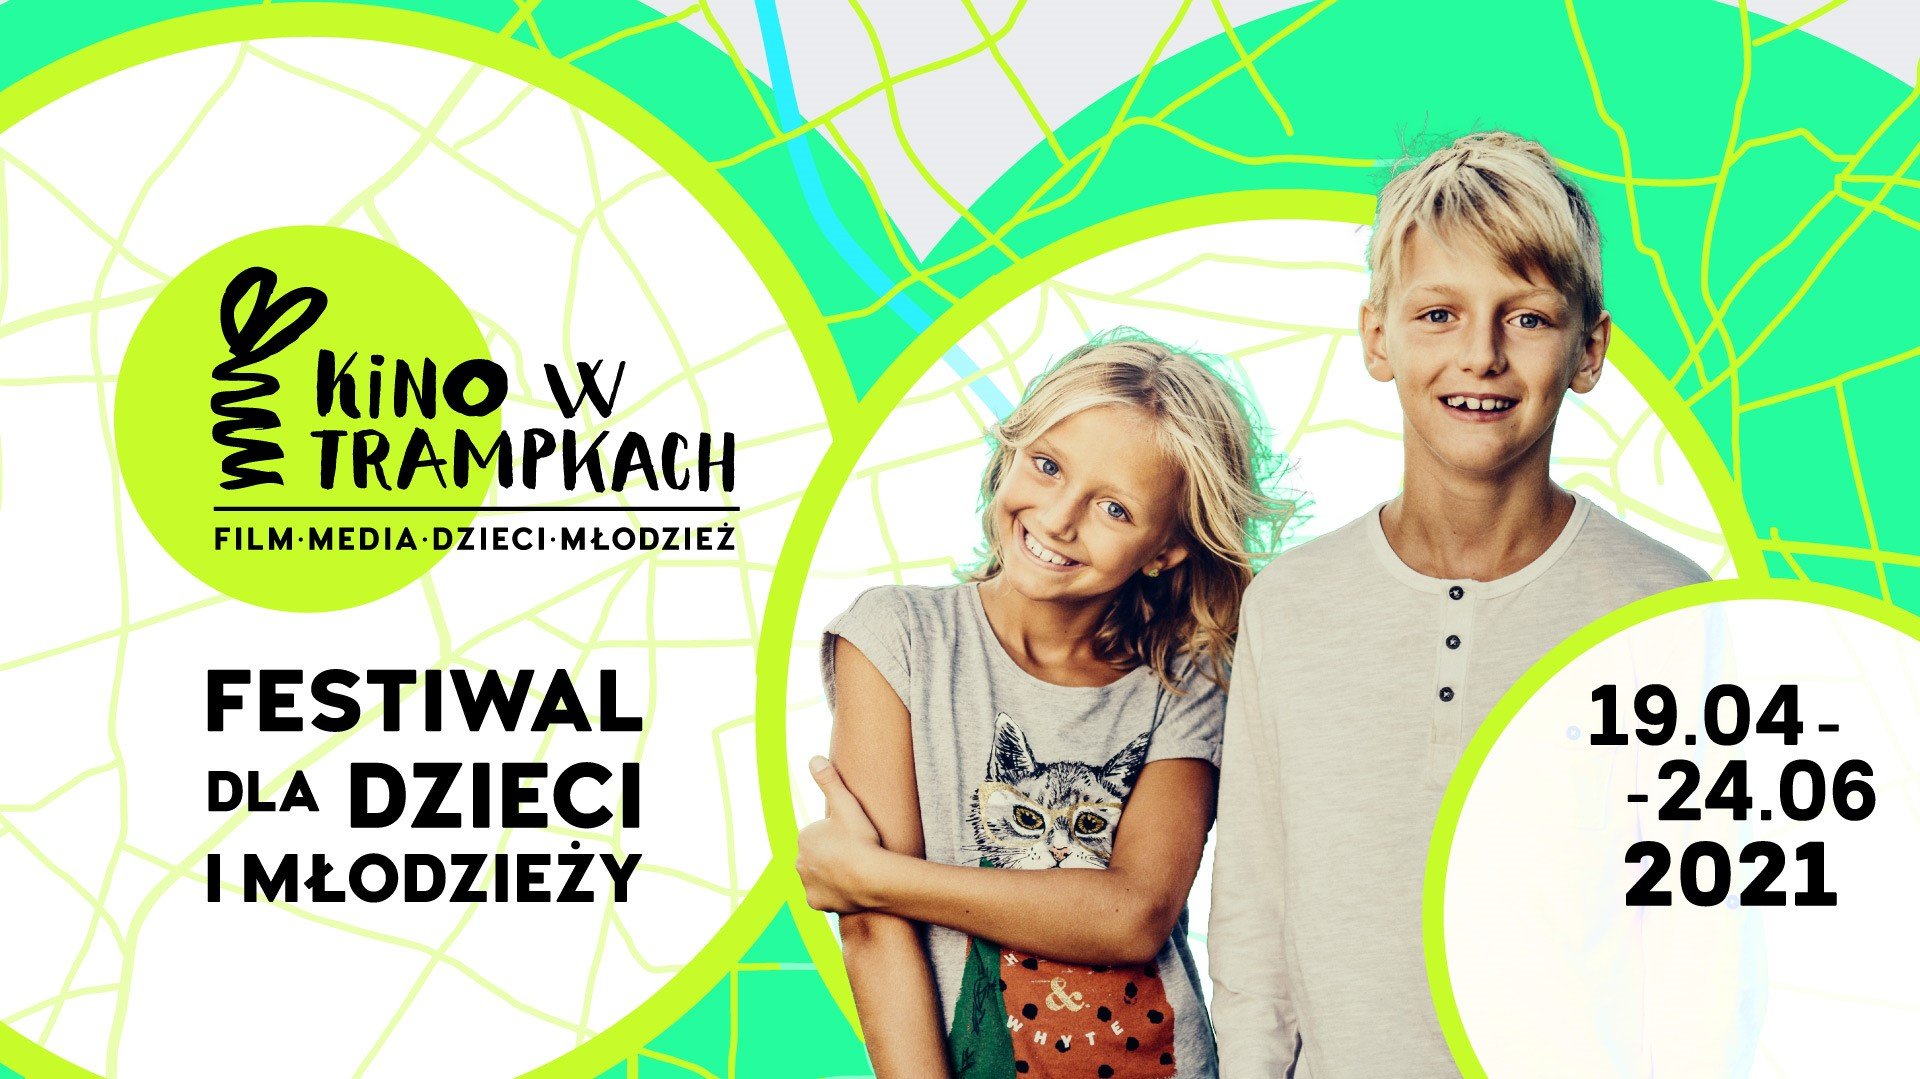 Kino w Trampkach powraca z wiosenną energią - festiwal dla dzieci i młodzieży